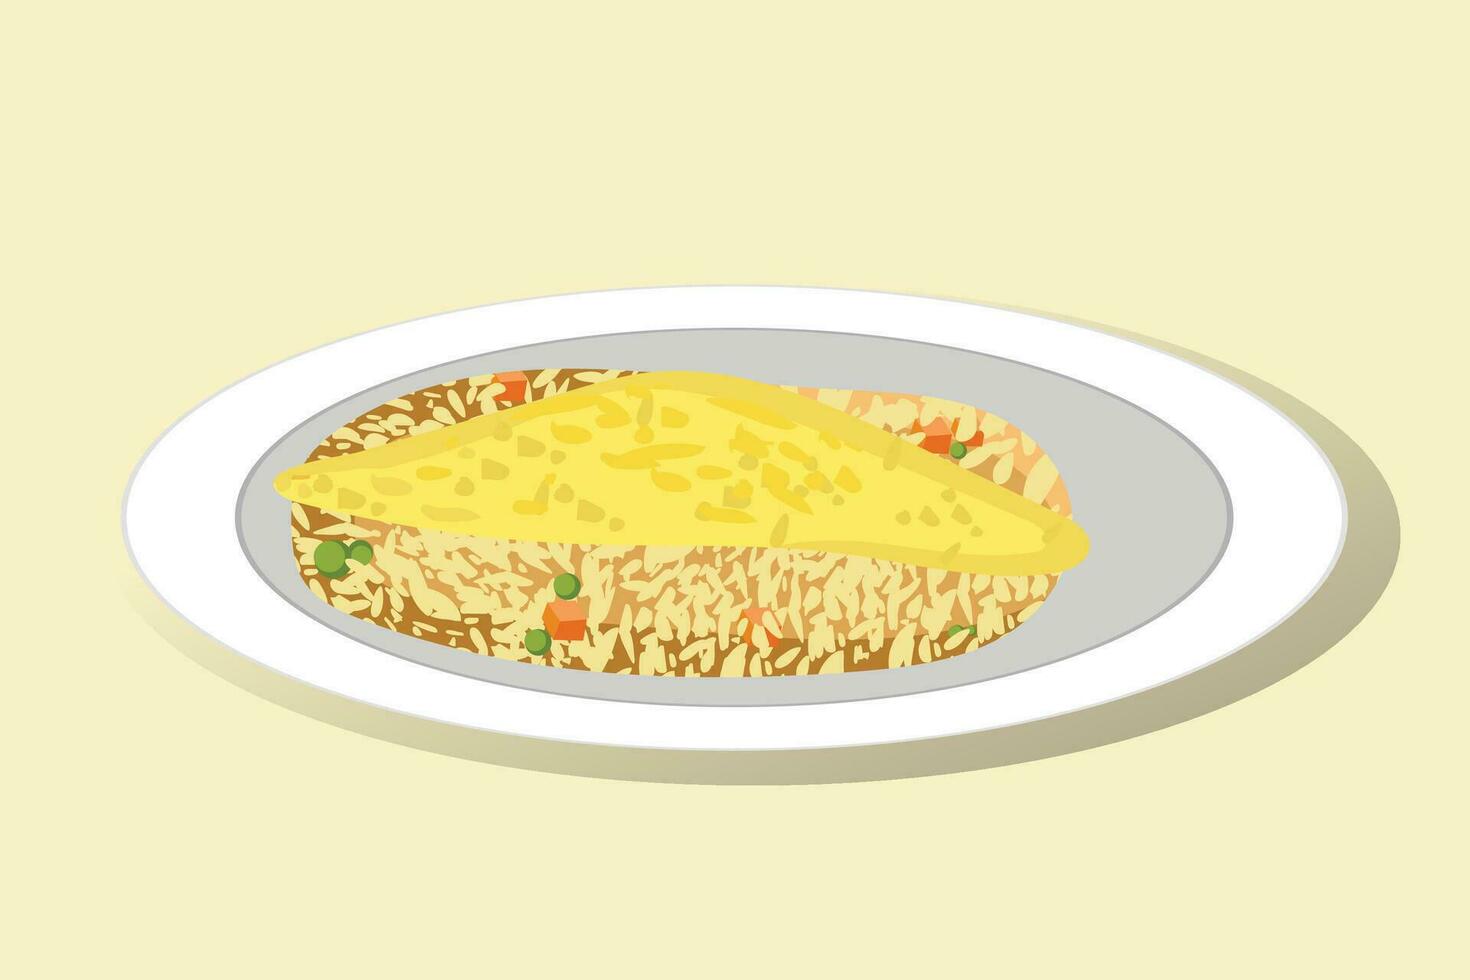 vector vlak illustratie van Japans voedsel, gebakken rijst- met door elkaar gegooid ei topping, omurice. door elkaar gegooid eieren, gesmolten eieren.